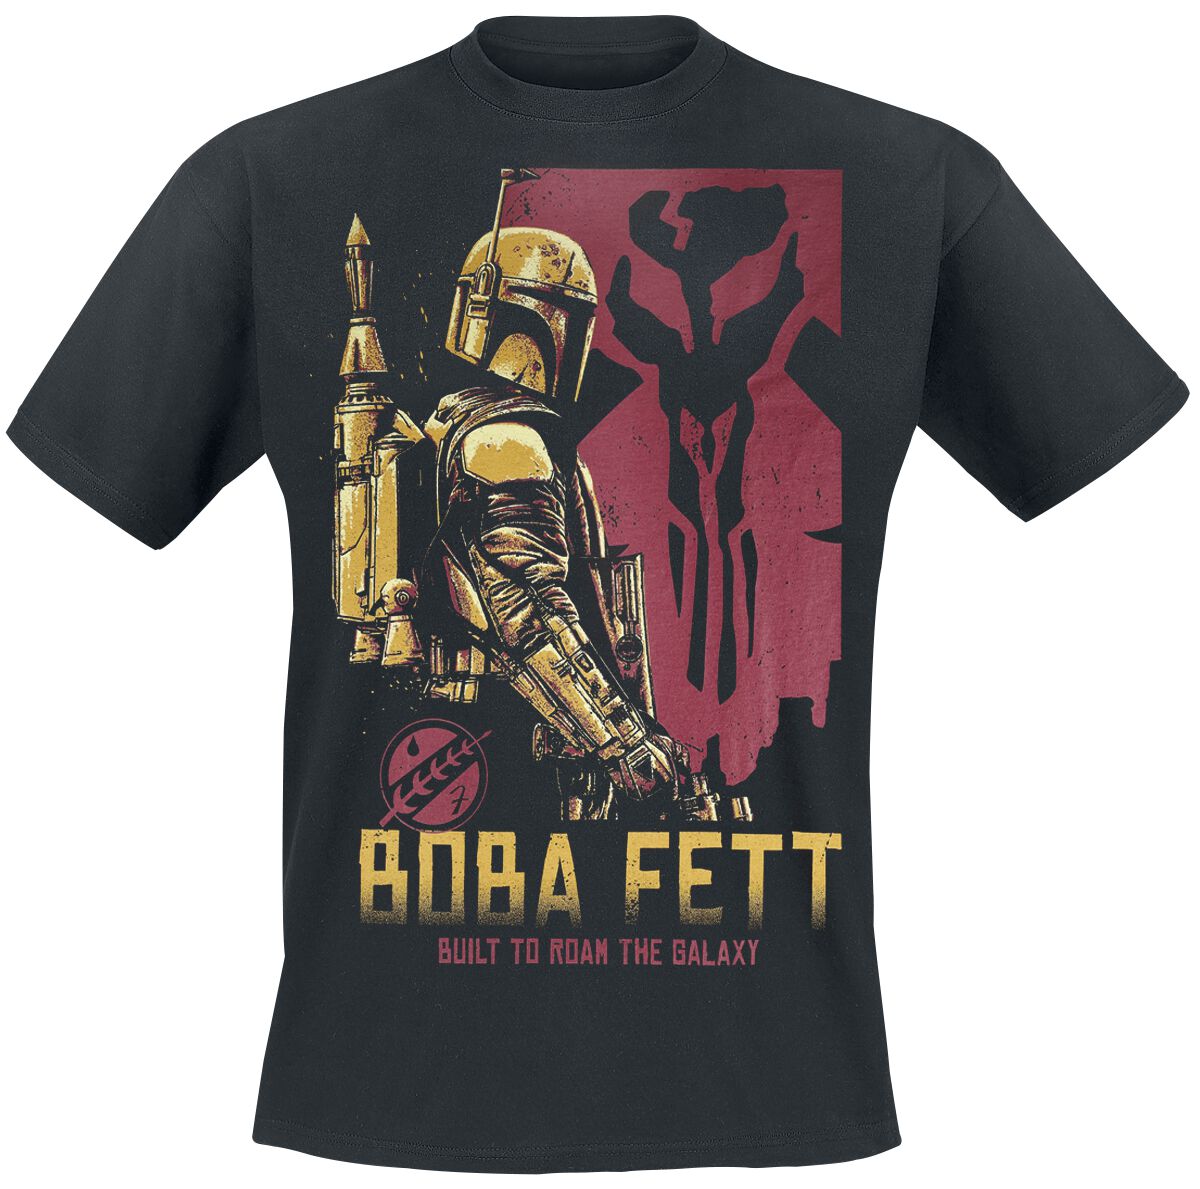 Star Wars T-Shirt - The Book Of Boba Fett - Roam The Galaxy - S bis 4XL - für Männer - Größe S - schwarz  - EMP exklusives Merchandise!